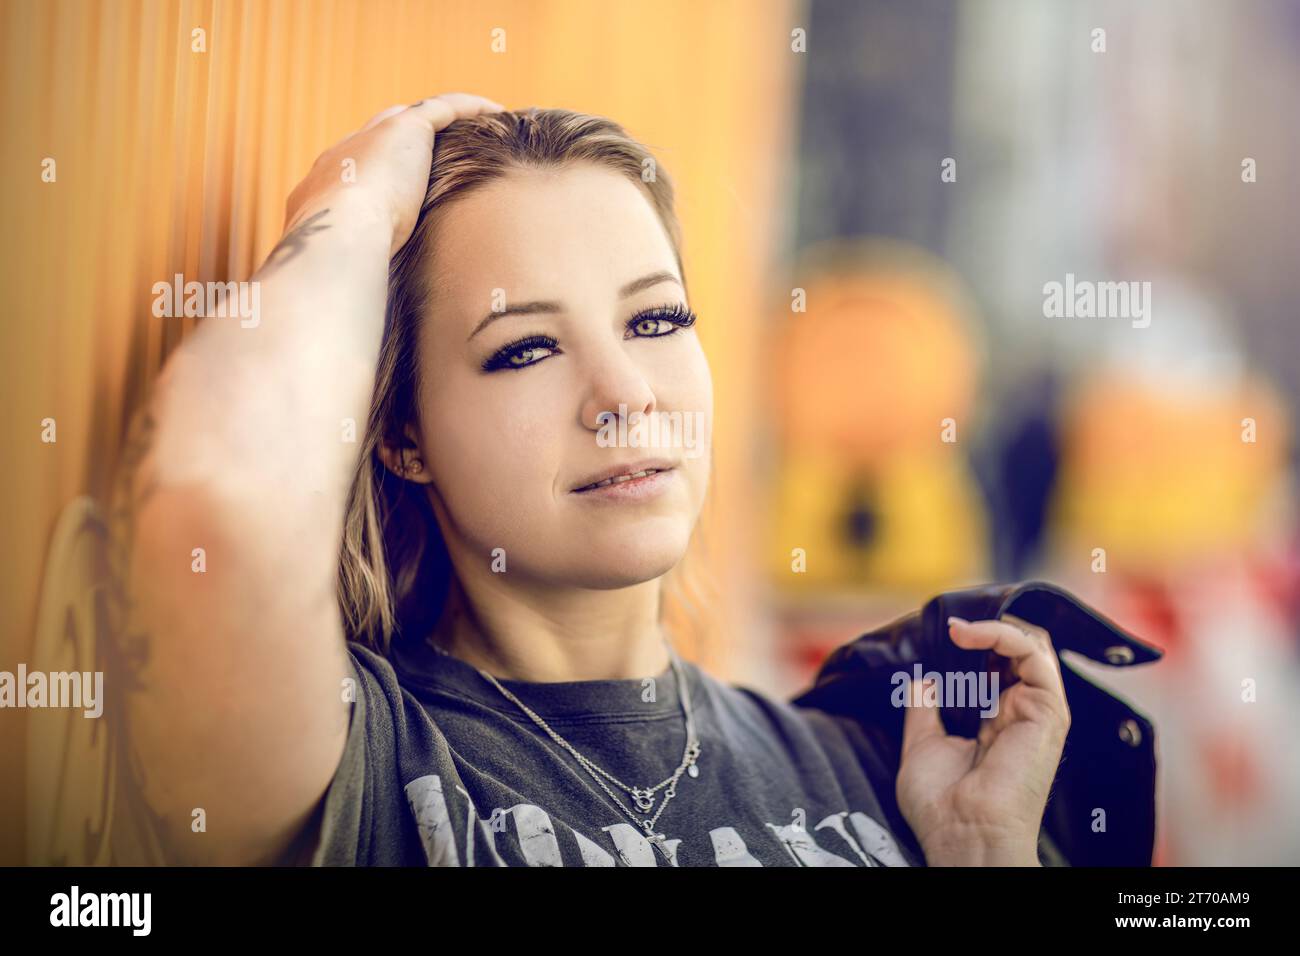 Primo piano di una giovane donna bionda che guarda sulle spalle, ritratto streetstyle Foto Stock